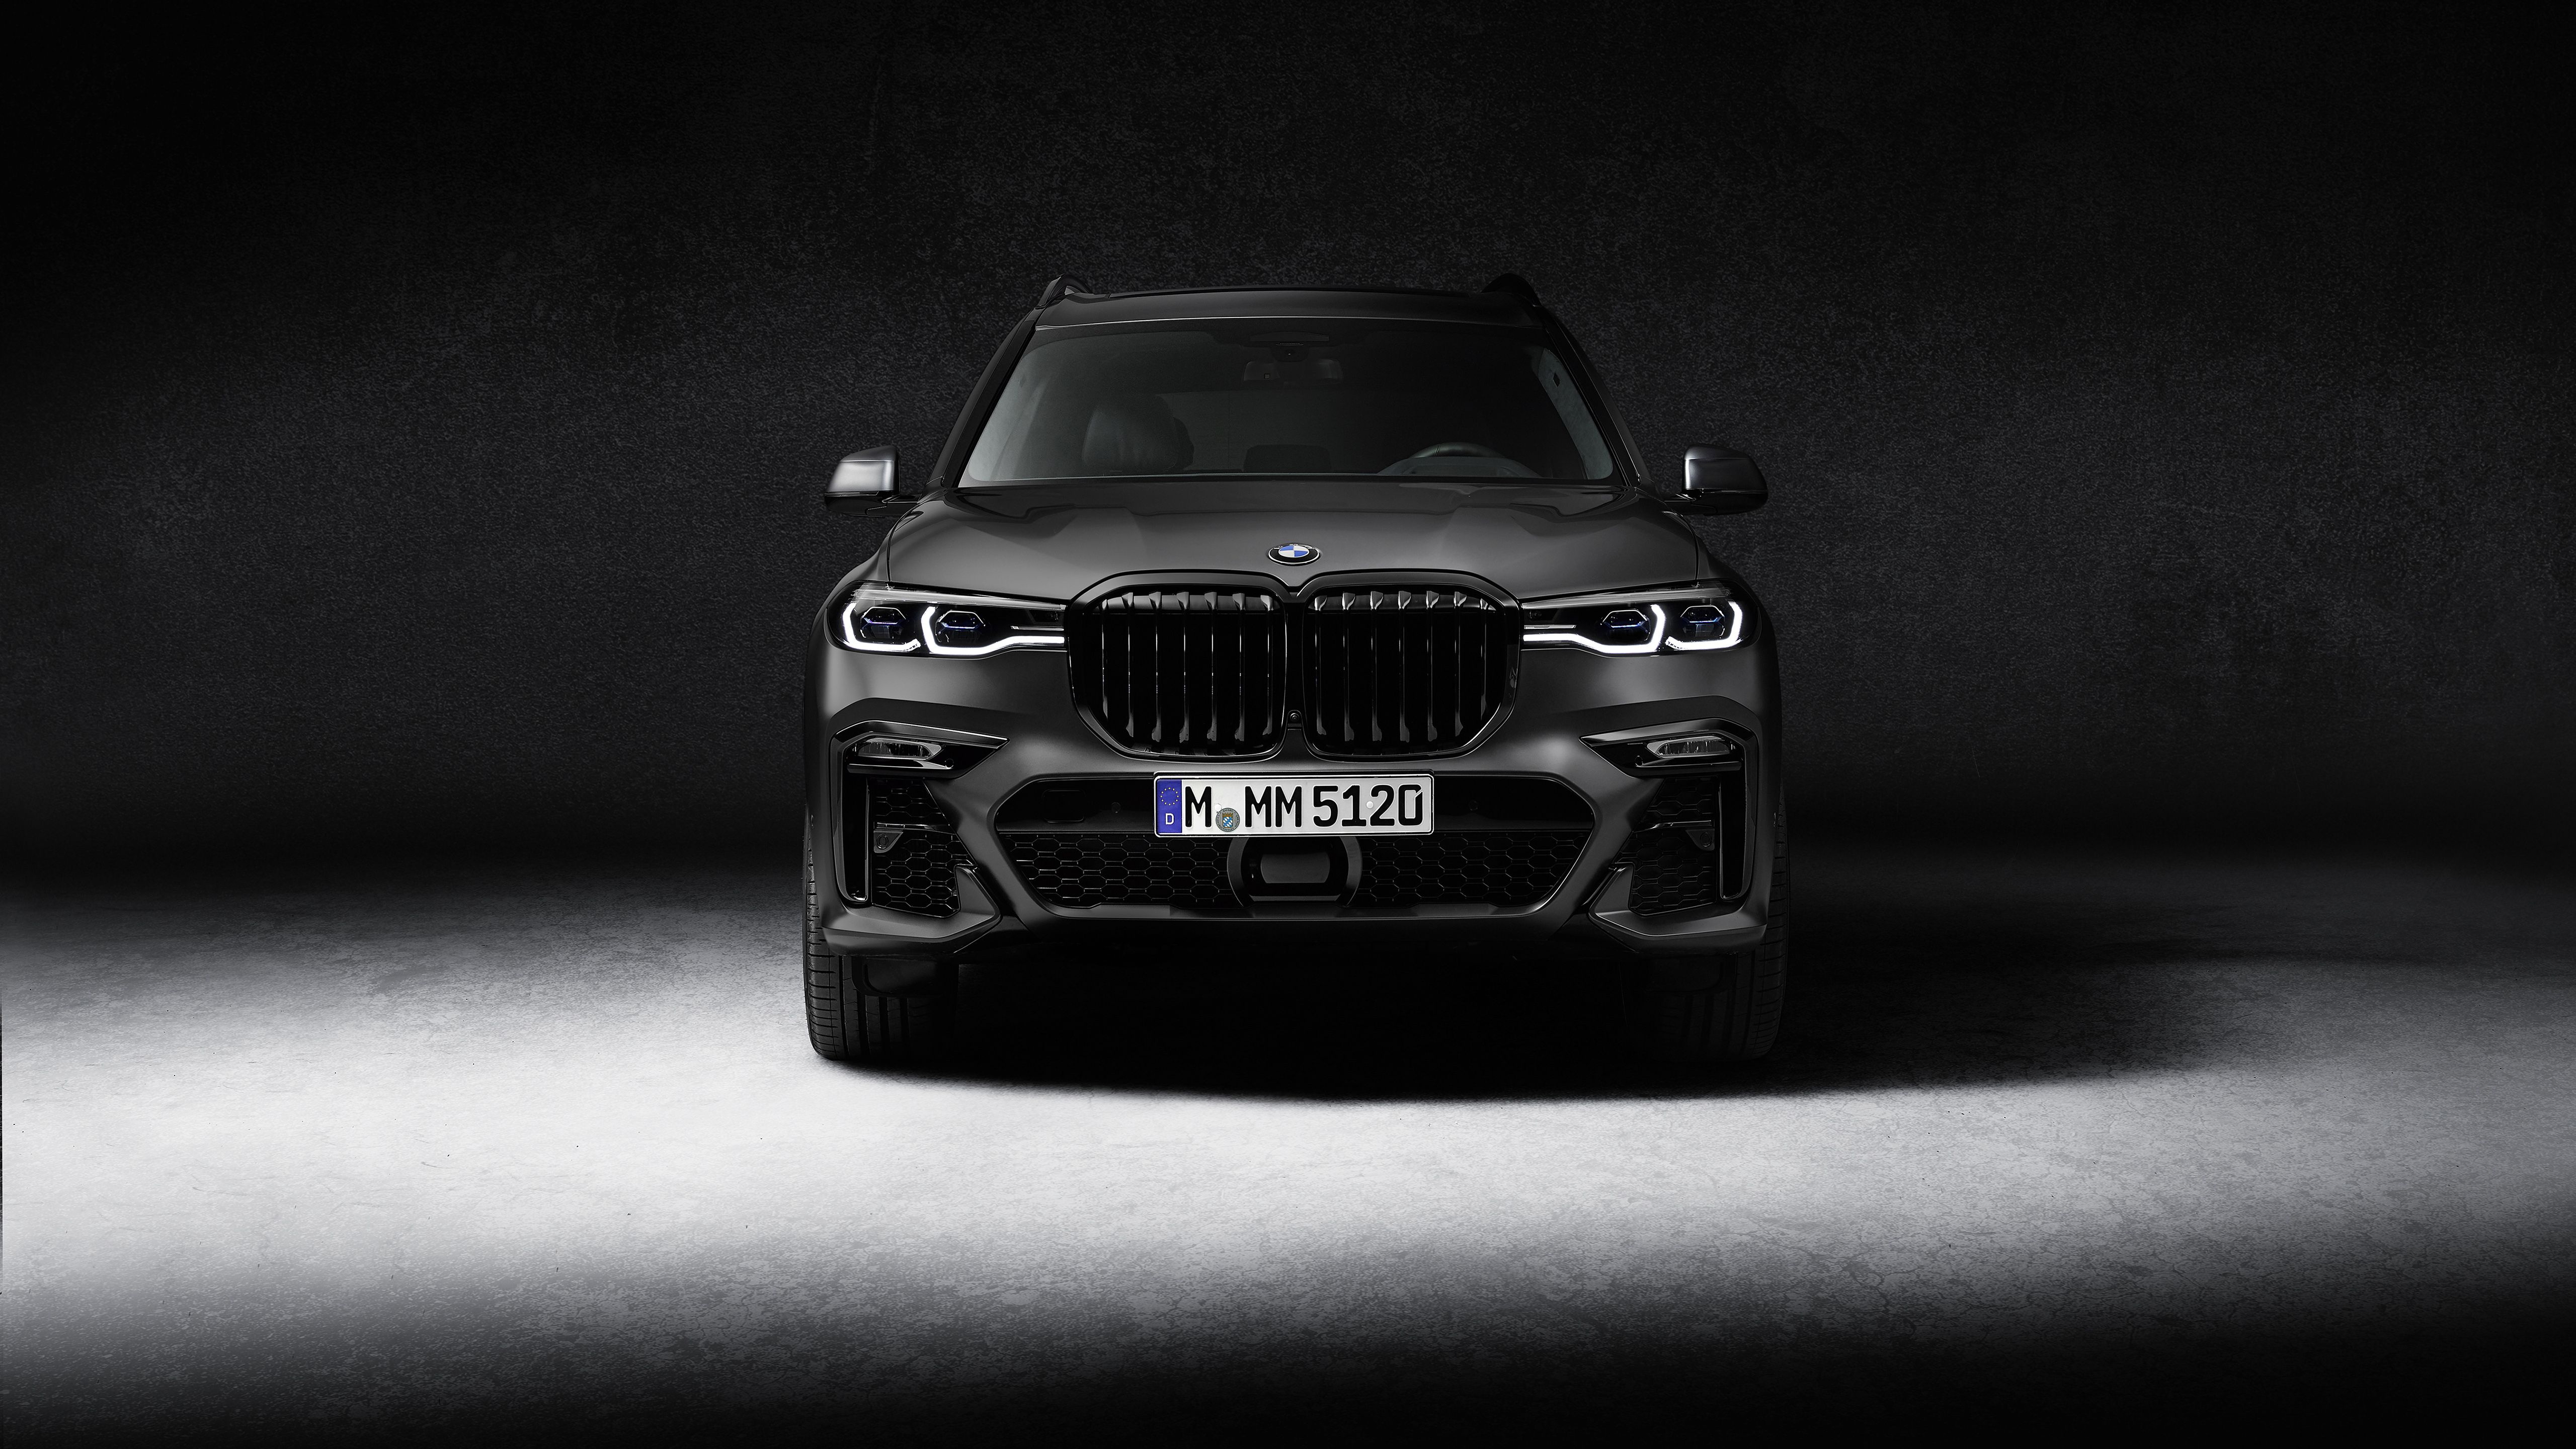 BMW X7 M50i Edition Dark Shadow 2020 5K Wallpaper. HD Car